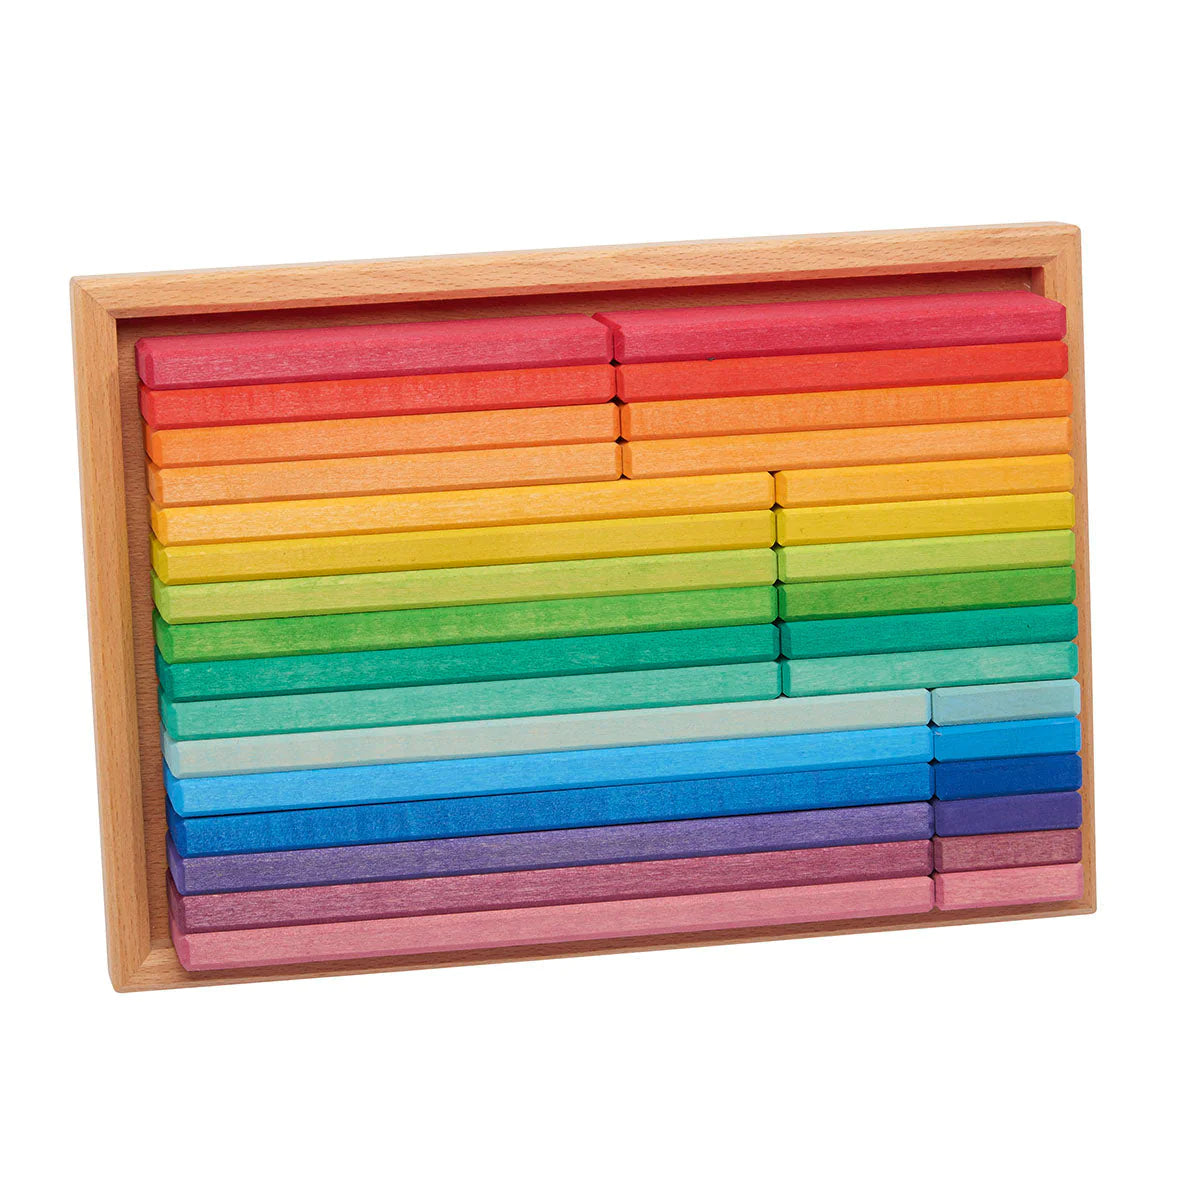 Gluckskafer Holzklötze – Regenbogen-Baulatten im Tablett – 32 Stück